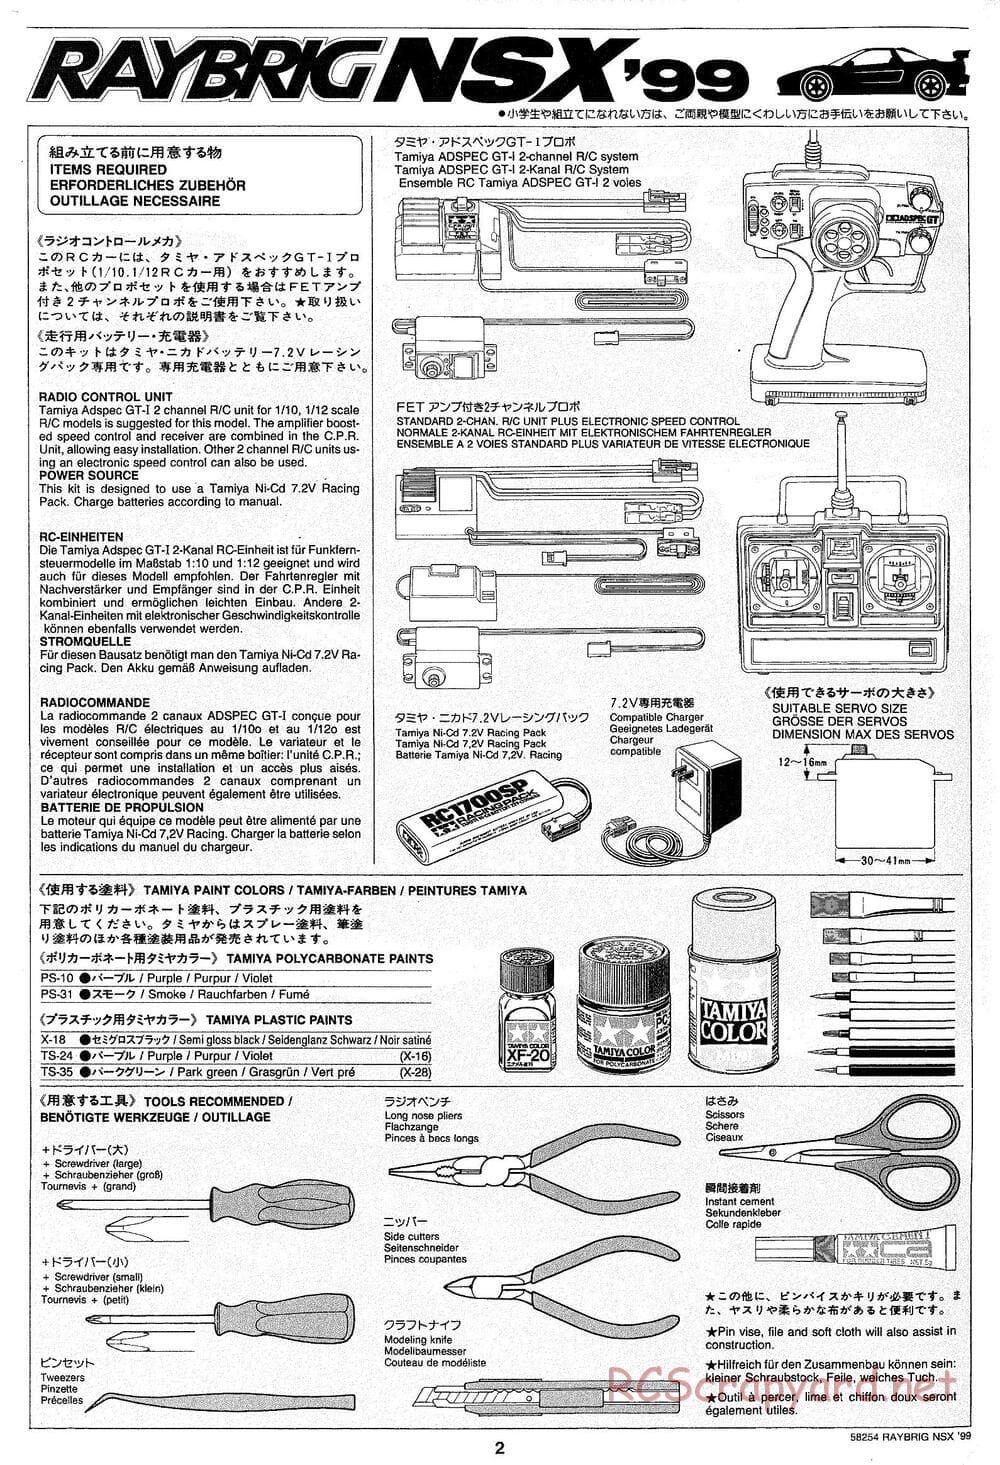 Tamiya - Raybrig NSX 99 - TA-03R Chassis - Manual - Page 2